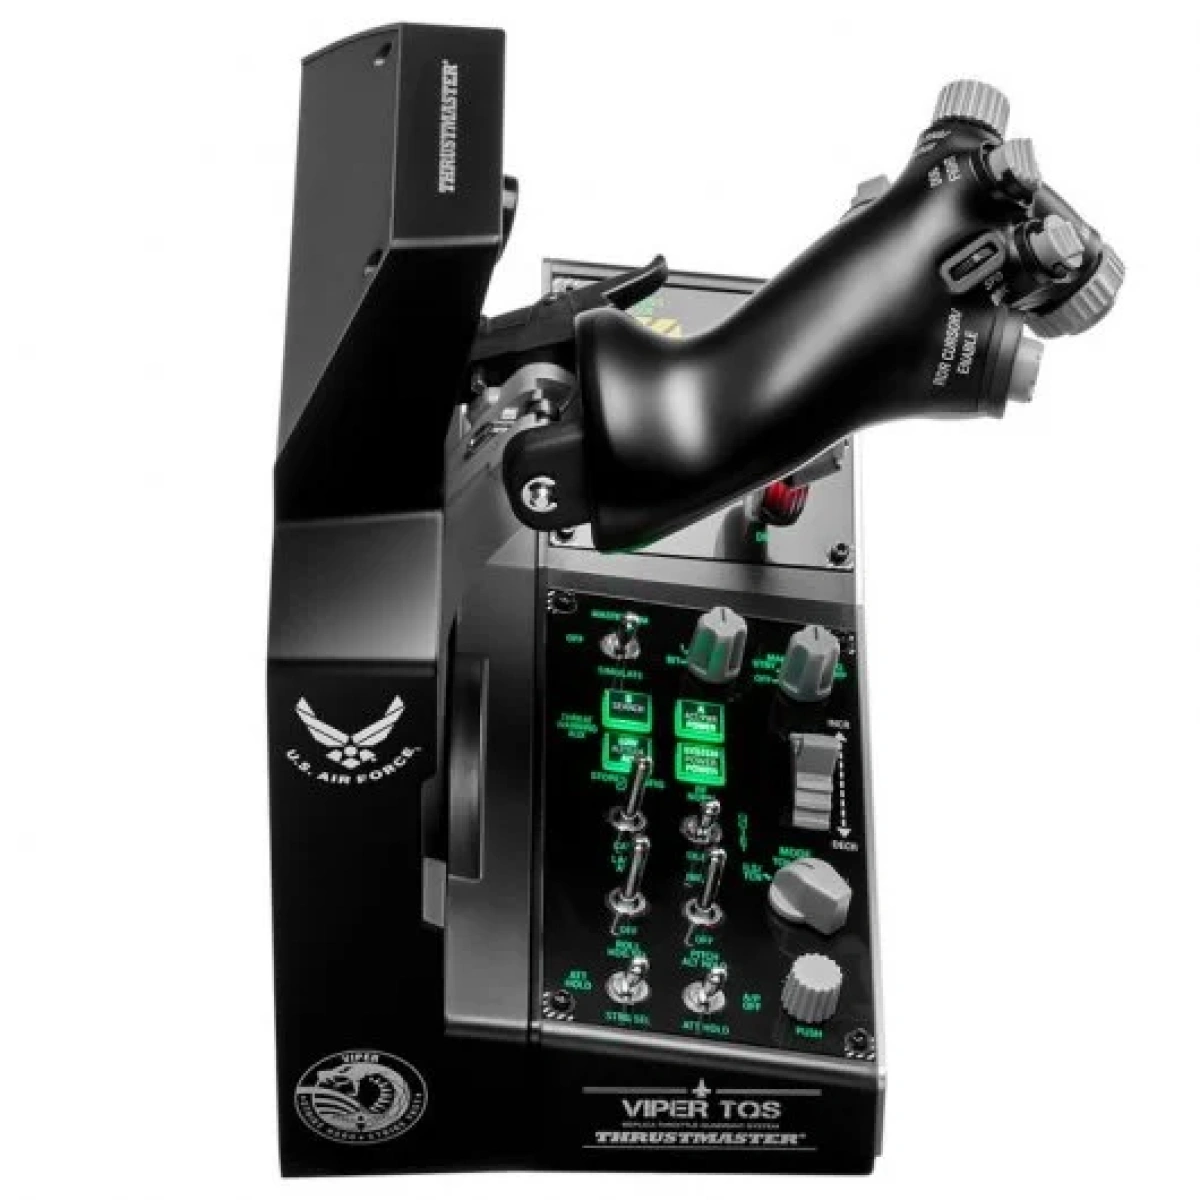 2105 thrustmaster viper tqs mission pack sistema de cuadrante de aceleracion del viper panel de control comprar